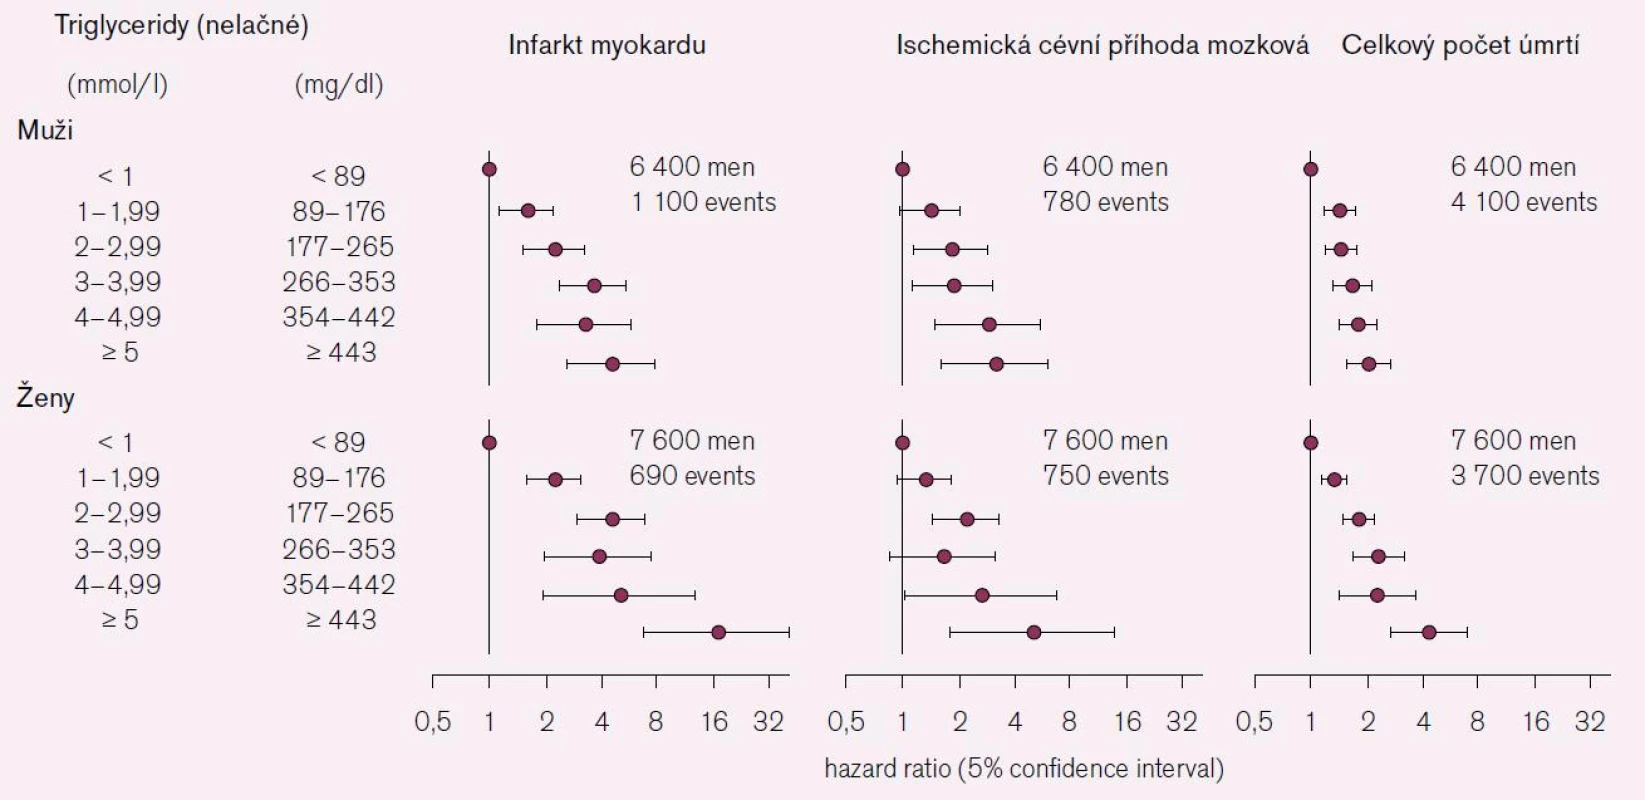 Vztah koncentrace triglyceridů v plazmě (nelačné) k riziku infarktu myokardu, cévní příhody mozkové a celkového počtu úmrtí (age-adjusted hazard ratio) podle dat z Copenhagen City Heart Study, s následným sledováním za 26–31 let. Podle [13].